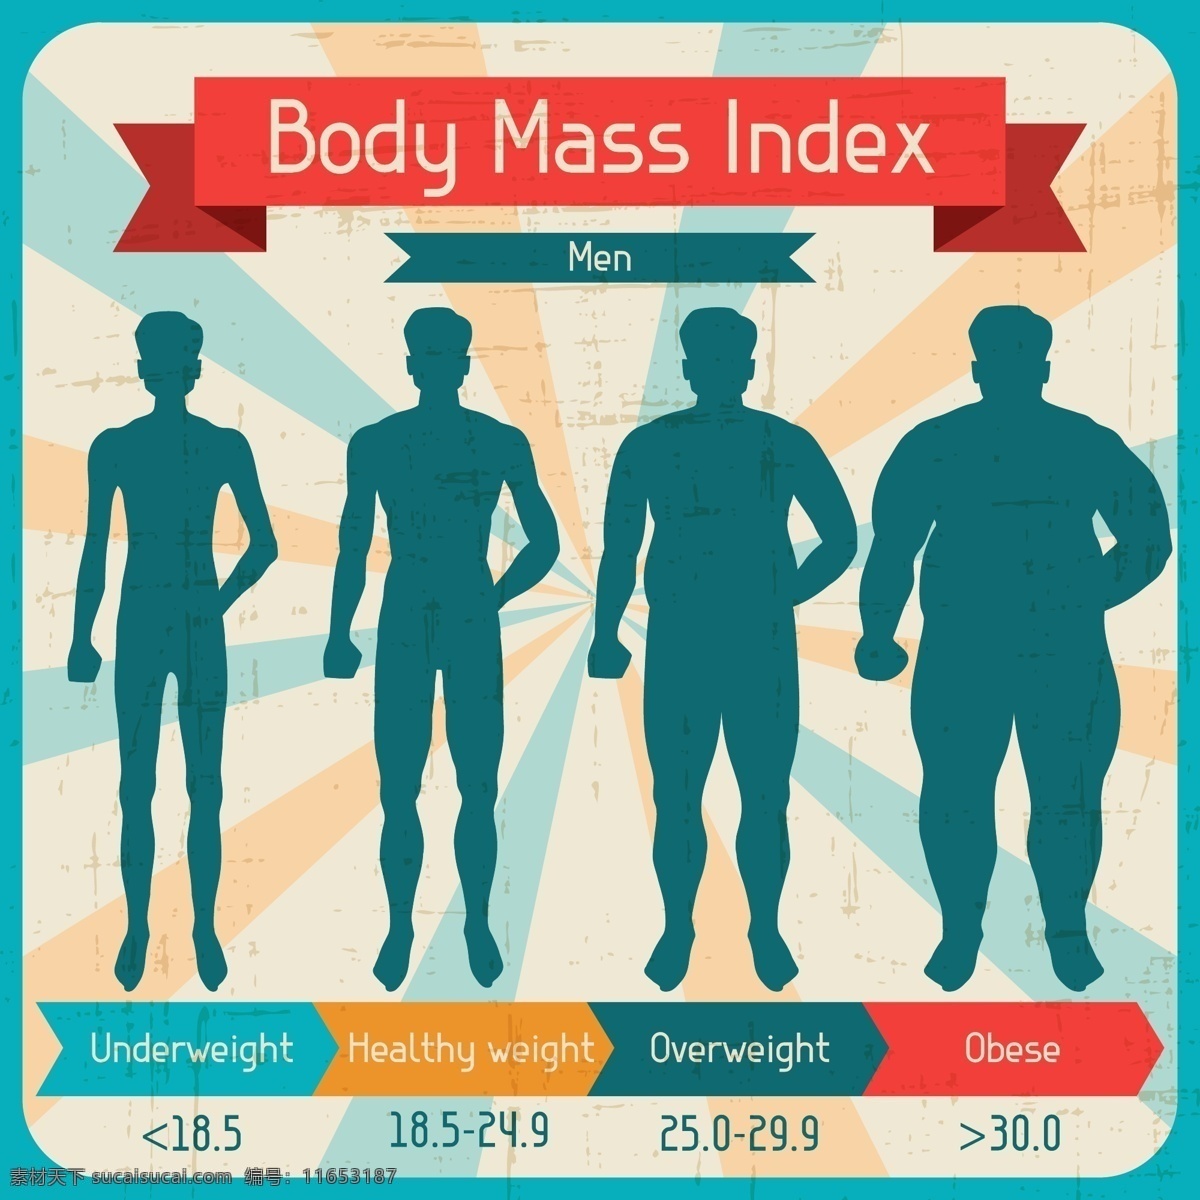 人体 数据分析 矢量 百分比 对比图 分类 分析 健康 男人 身材 身体 矢量素材 统计 质量 指数 减持 体重 超重 痴肥 身形 信息 图表 向量插图 统计图 解析 人均 txyuu 矢量图 其他矢量图